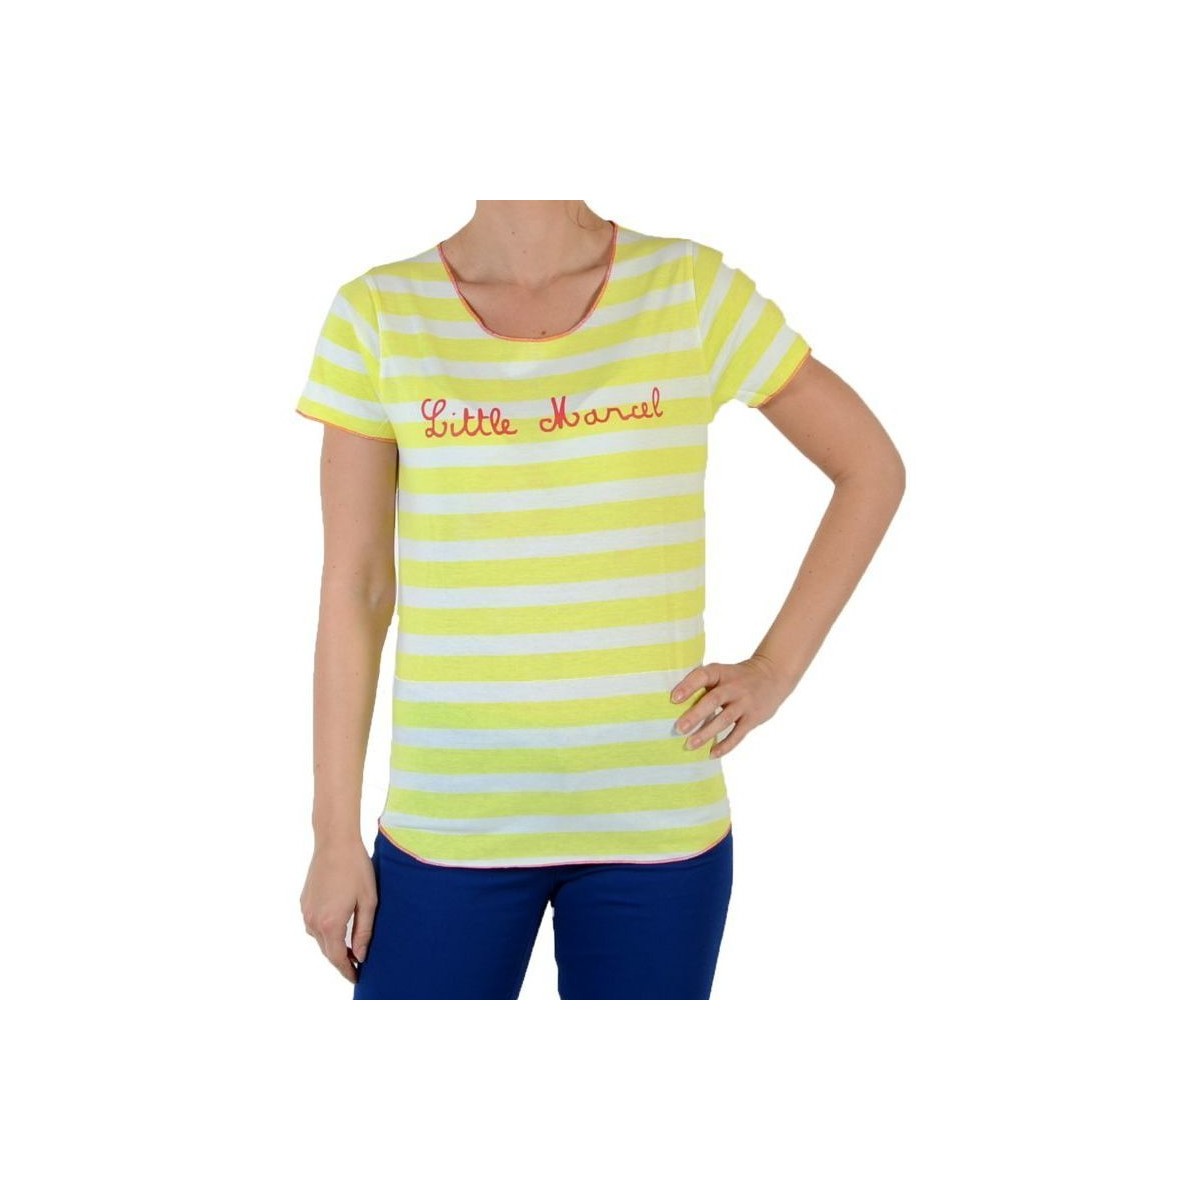 Υφασμάτινα Γυναίκα T-shirts & Μπλούζες Little Marcel 30525 Yellow